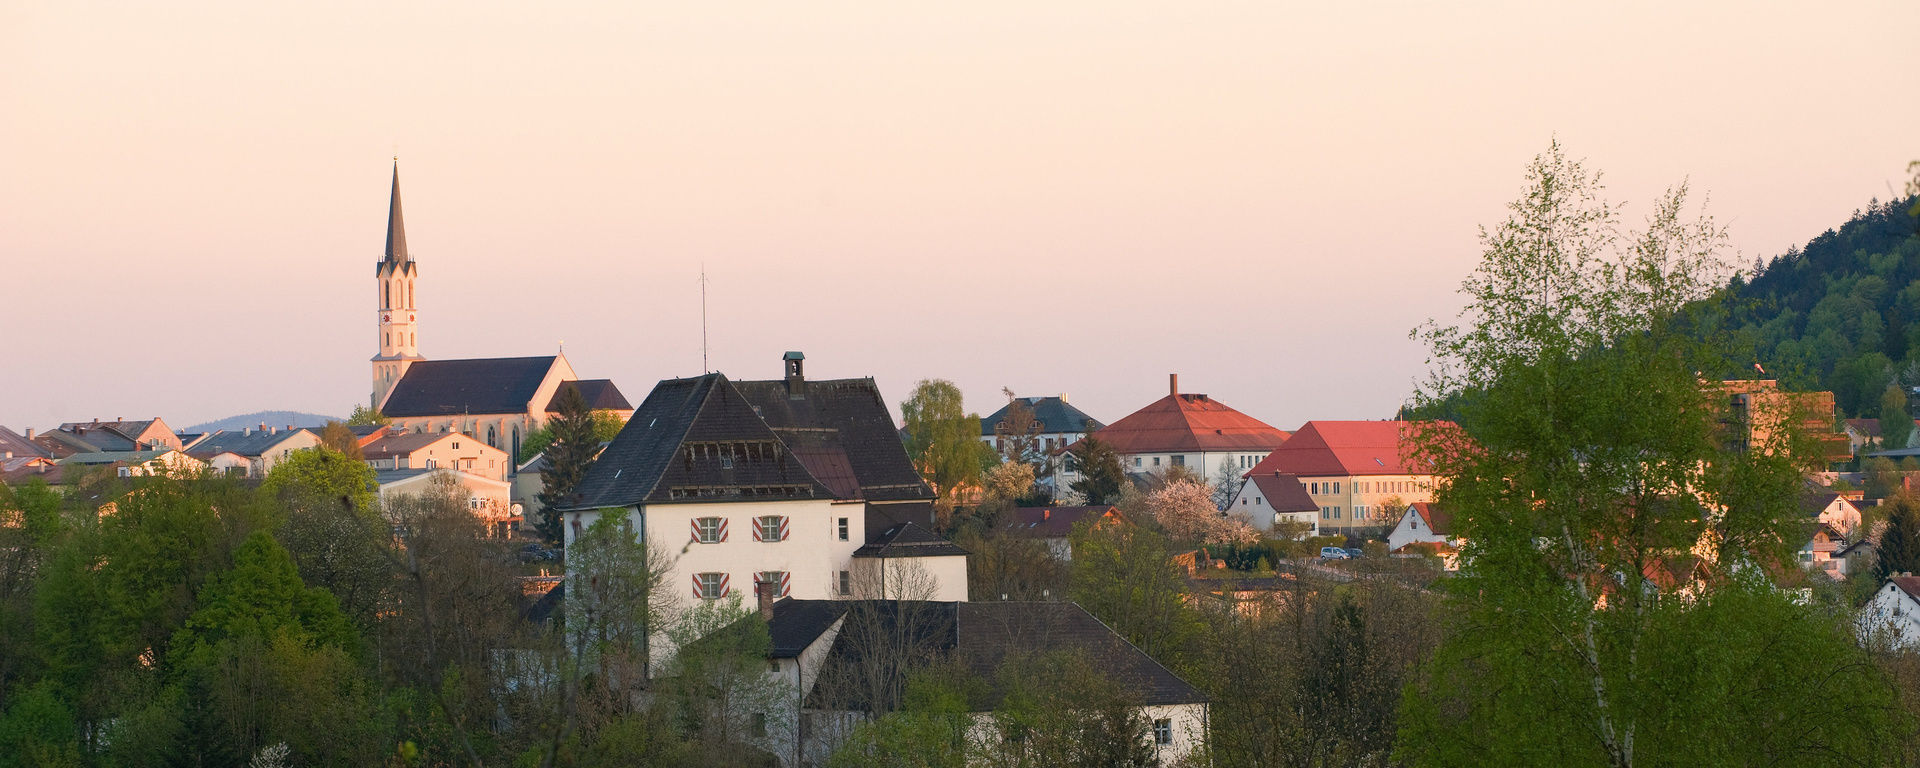 Blick über sie Stadt Freyung bis hin zur Kirche am Stadplatz umgeben von Bäumen